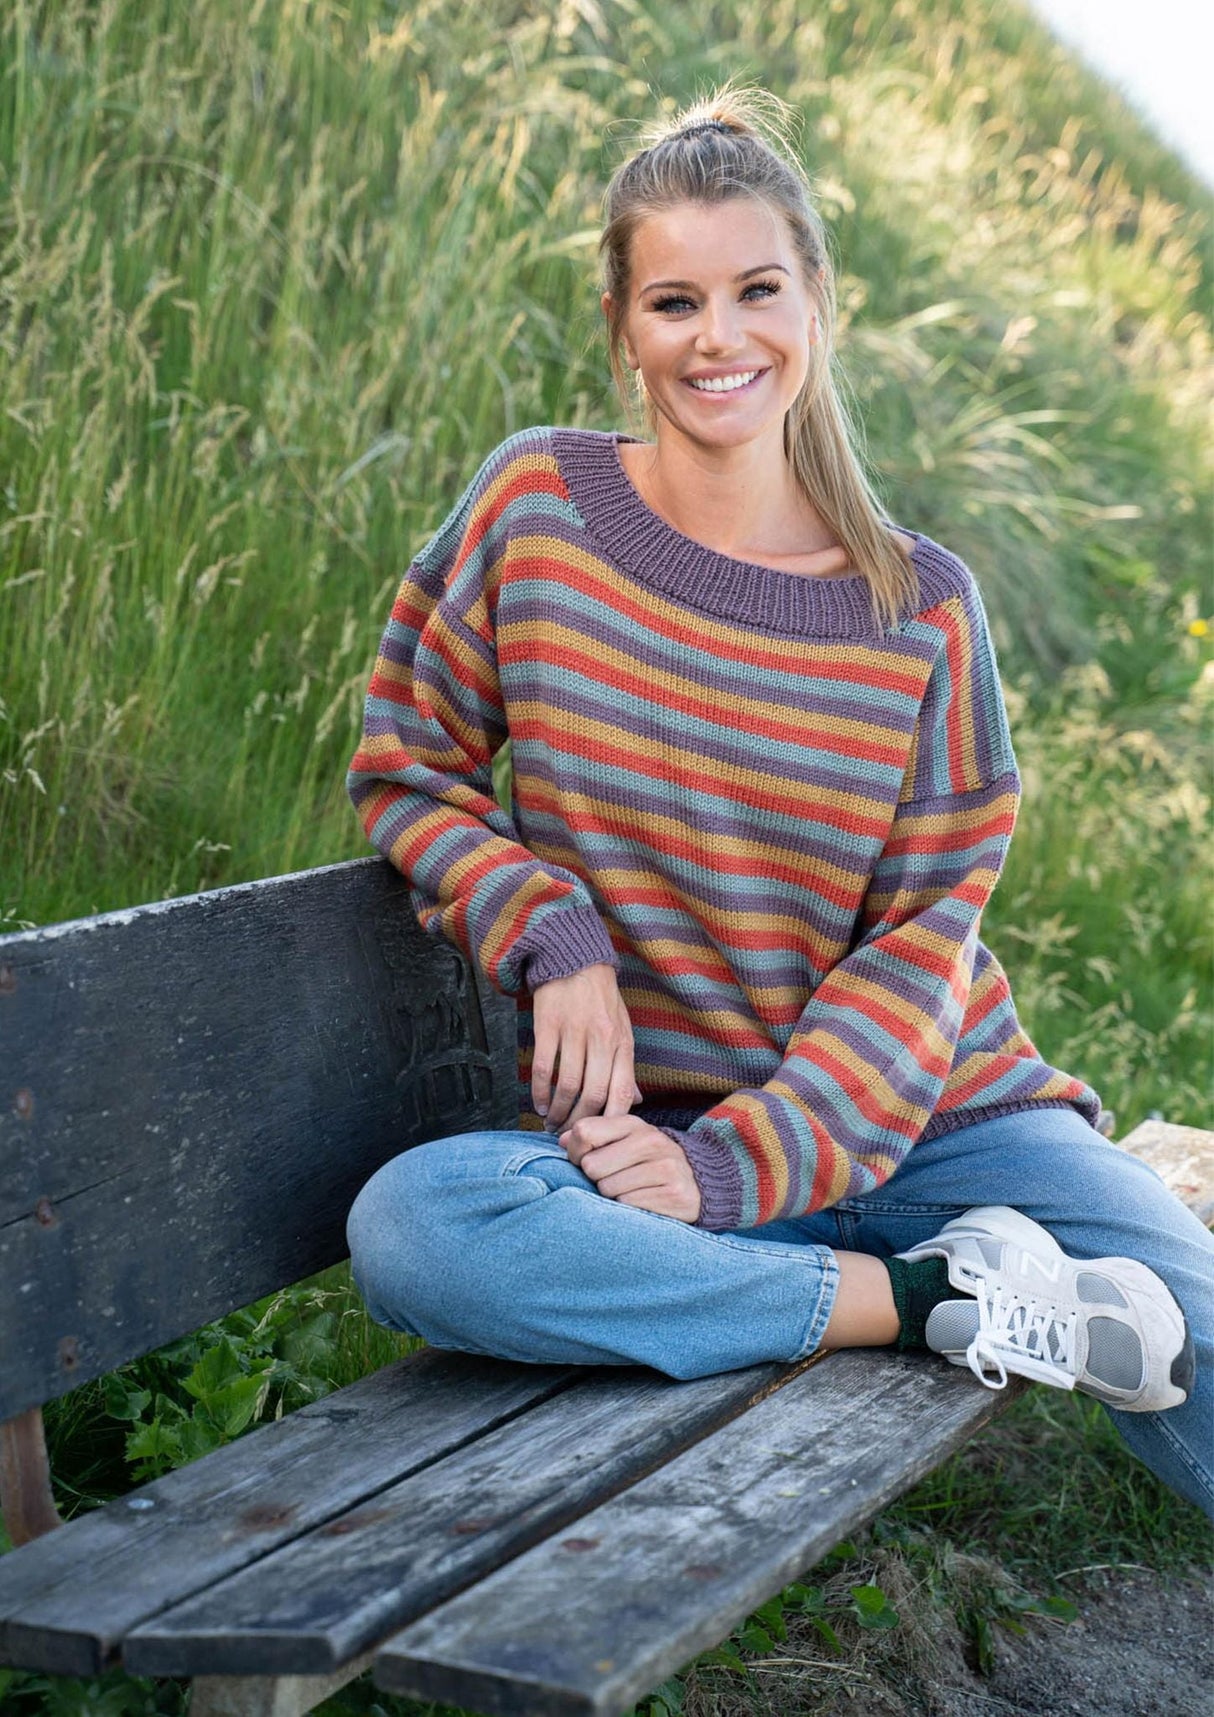 Firefarvet stribet sweater